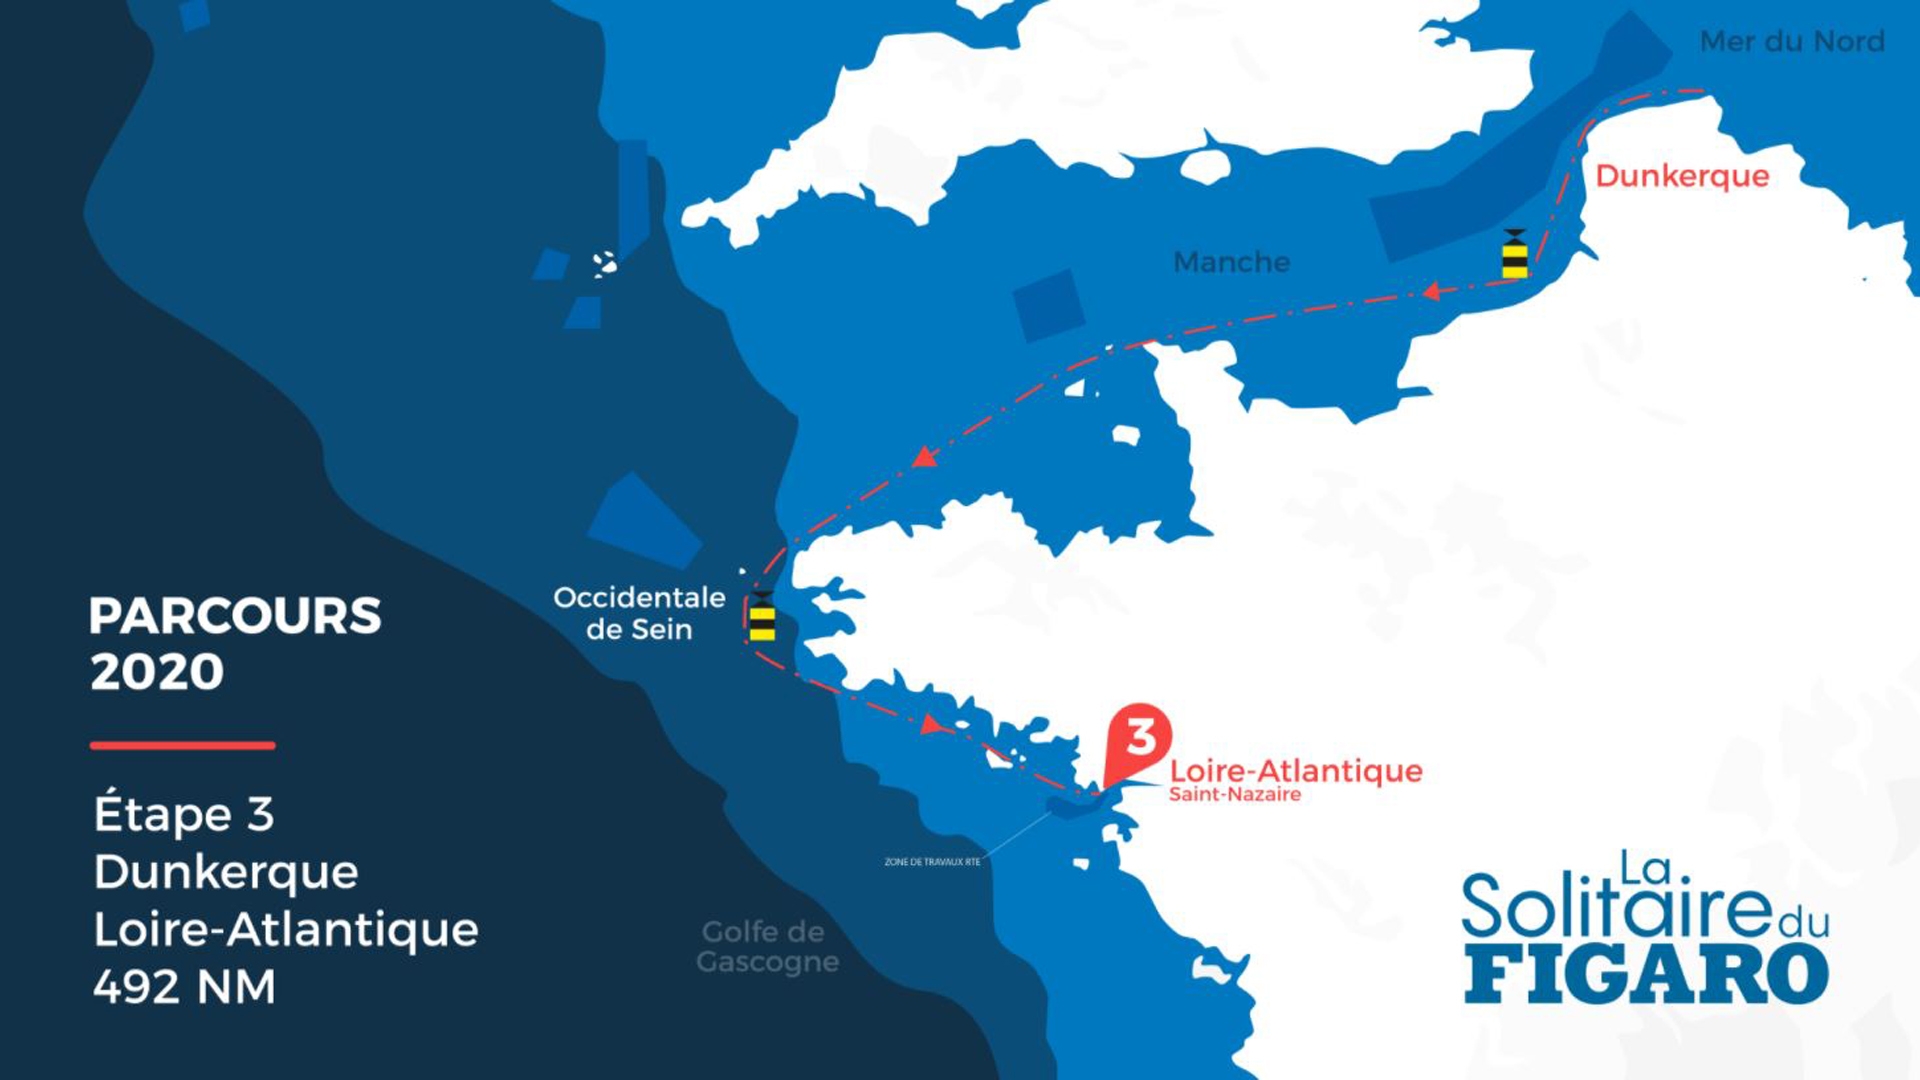 La Solitaire du Figaro - Stage 3 race route